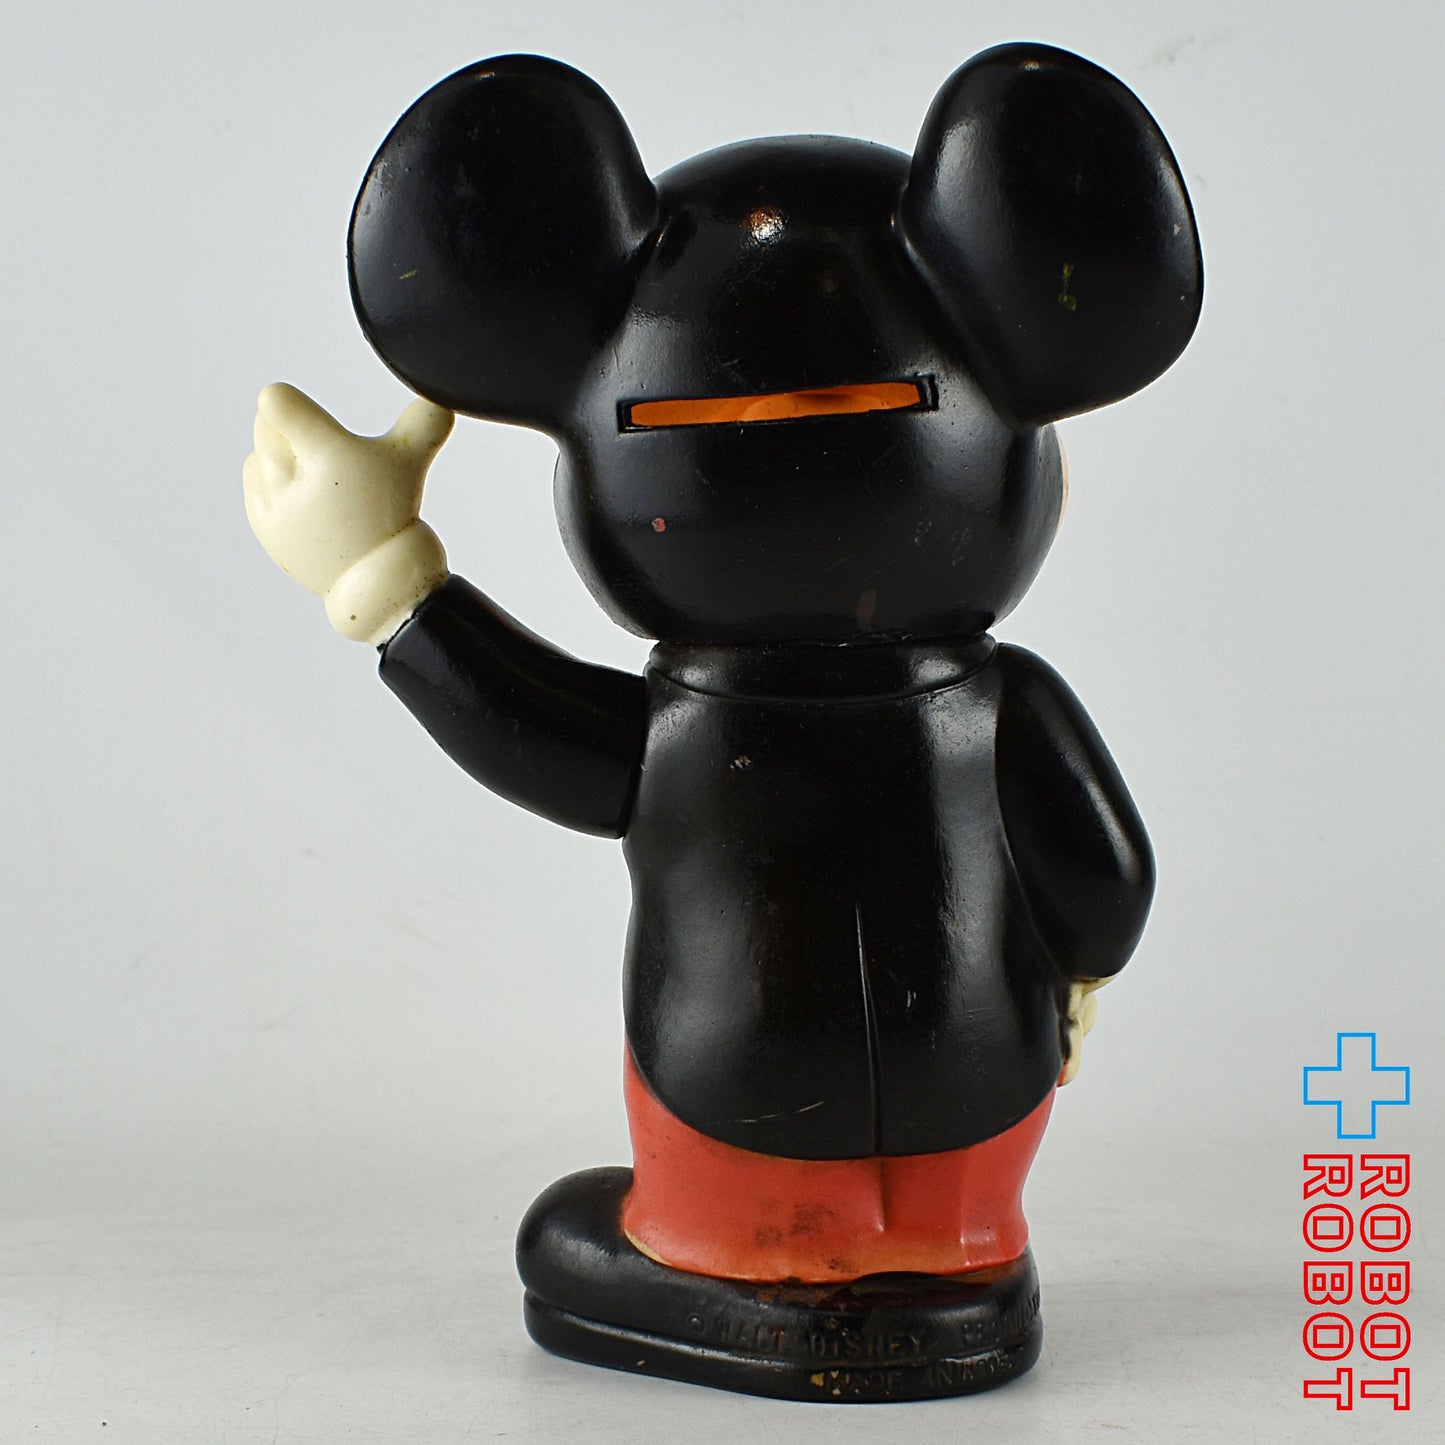 ディズニー ミッキーマウス タキシード 左手上げ ソフビ貯金箱 KOREA